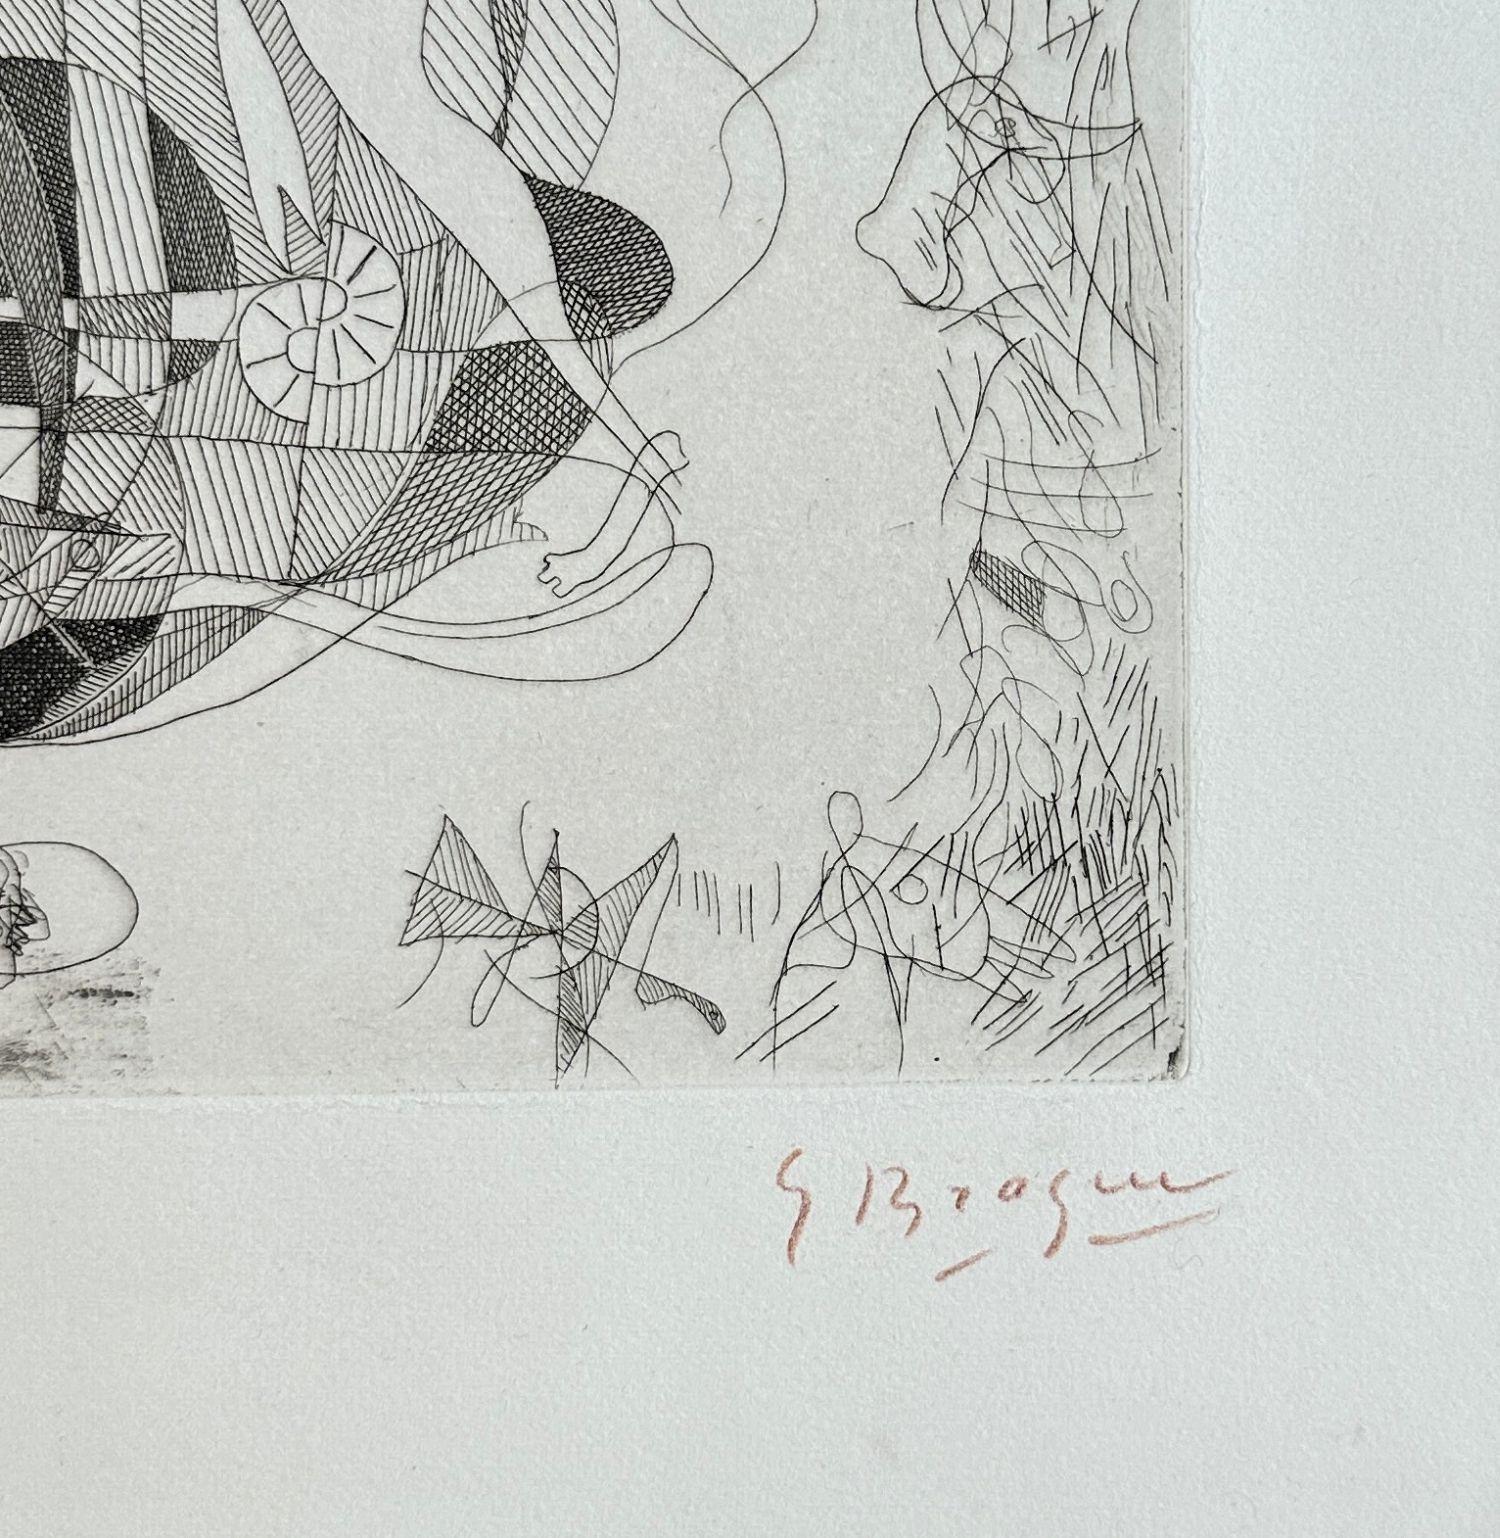 Georges Braque (1882-1963)
Hesiods Theogonie: Pegasus

Original-Radierung, 1932
Handsigniert mit Bleistift
Nummeriert /50 Exemplare
Auf Hollande Vellum im Format 49 x 38,5 cm (ca. 19 x 15 Zoll)
Herausgegeben von Vollard und gedruckt von